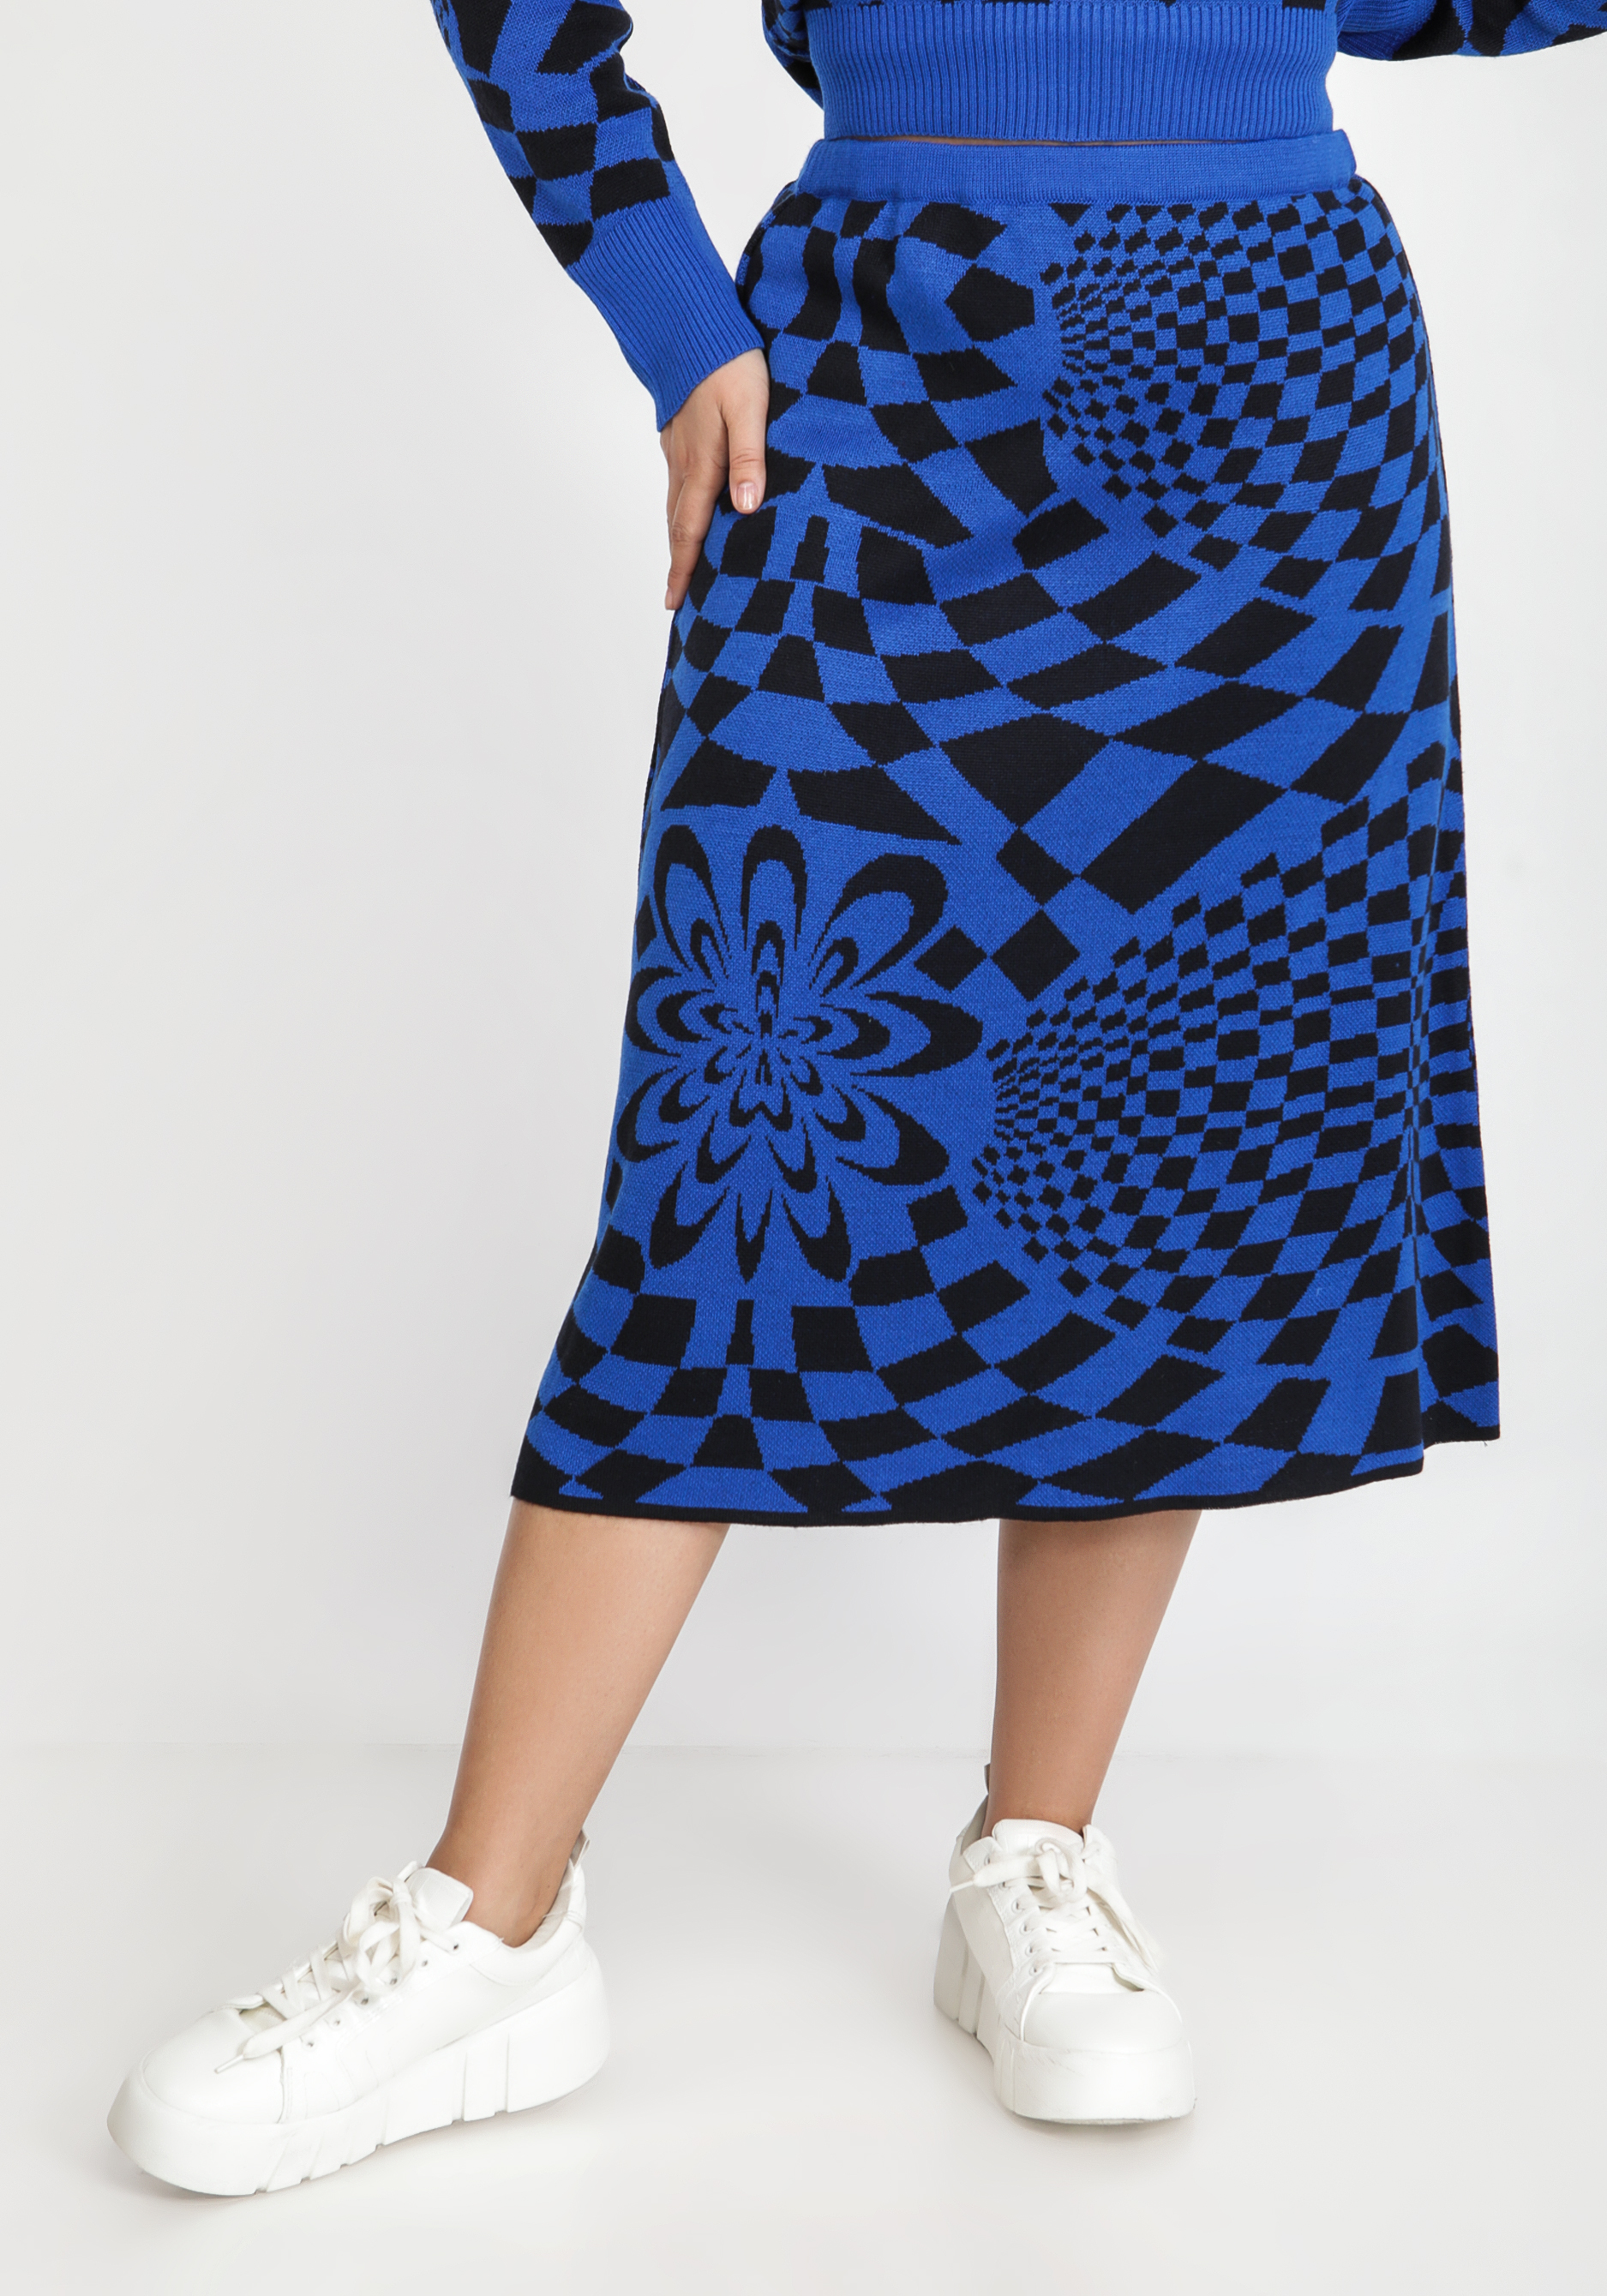 Юбка с абстрактным рисунком юбка шорты трикотажная